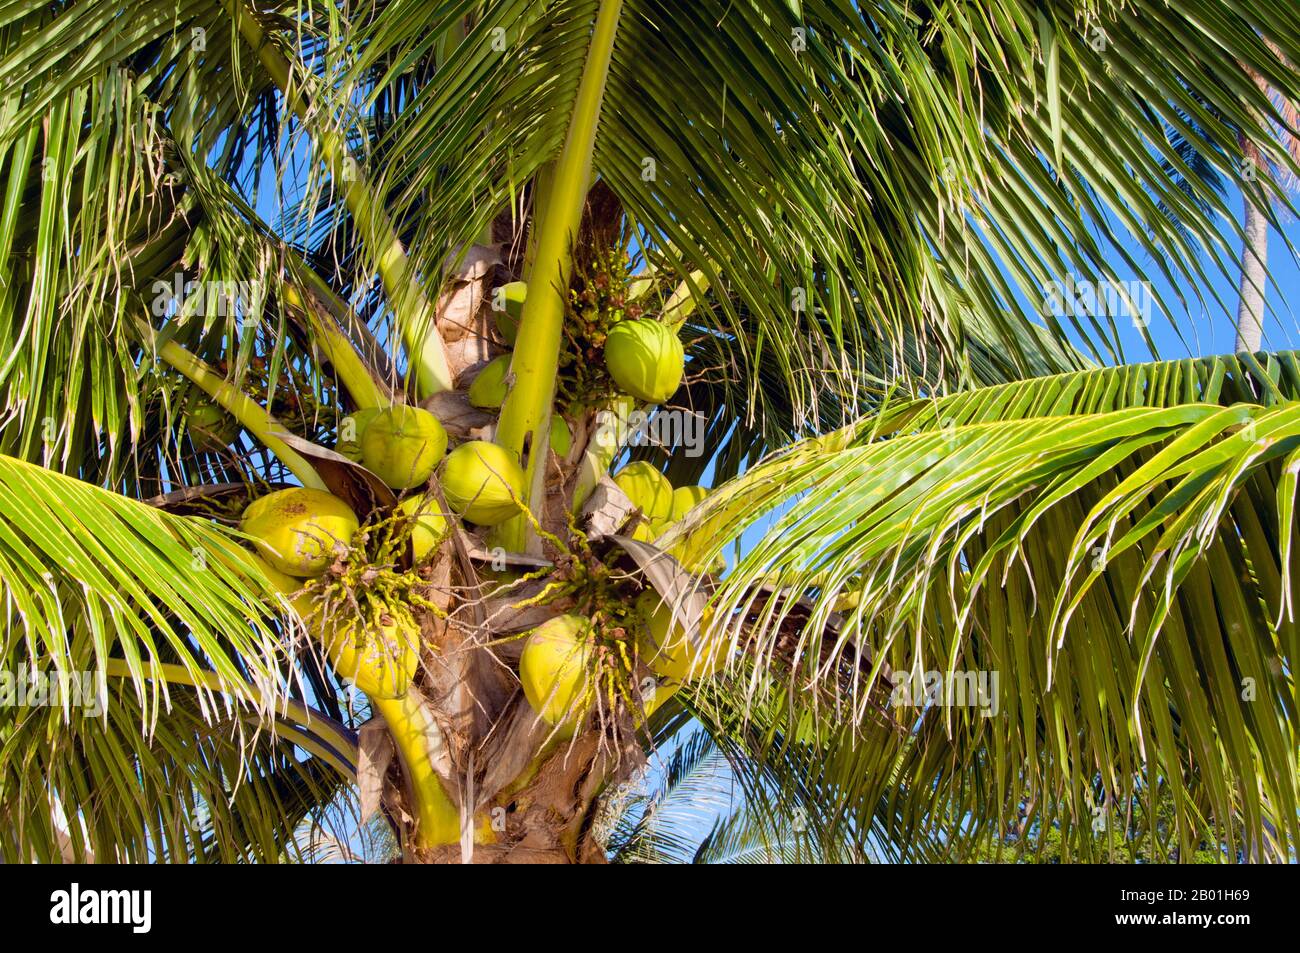 Thaïlande : palmier de noix de coco, chapeau Sai RI, Ko Tao. Le cocotier, ou Cocos nucifera, est apprécié non seulement pour sa beauté, mais aussi comme une culture commerciale lucrative. Cultivée dans les mers du Sud et les régions de l'océan Indien, elle fournit nourriture, boisson, abri, transport, carburant, médicaments et même vêtements pour des millions de personnes. Le cocotier vit environ 60 ans et produit environ 70-80 noix par an. Les arbres mesurent parfois 40-50 mètres (130-160 pieds) de haut. Banque D'Images